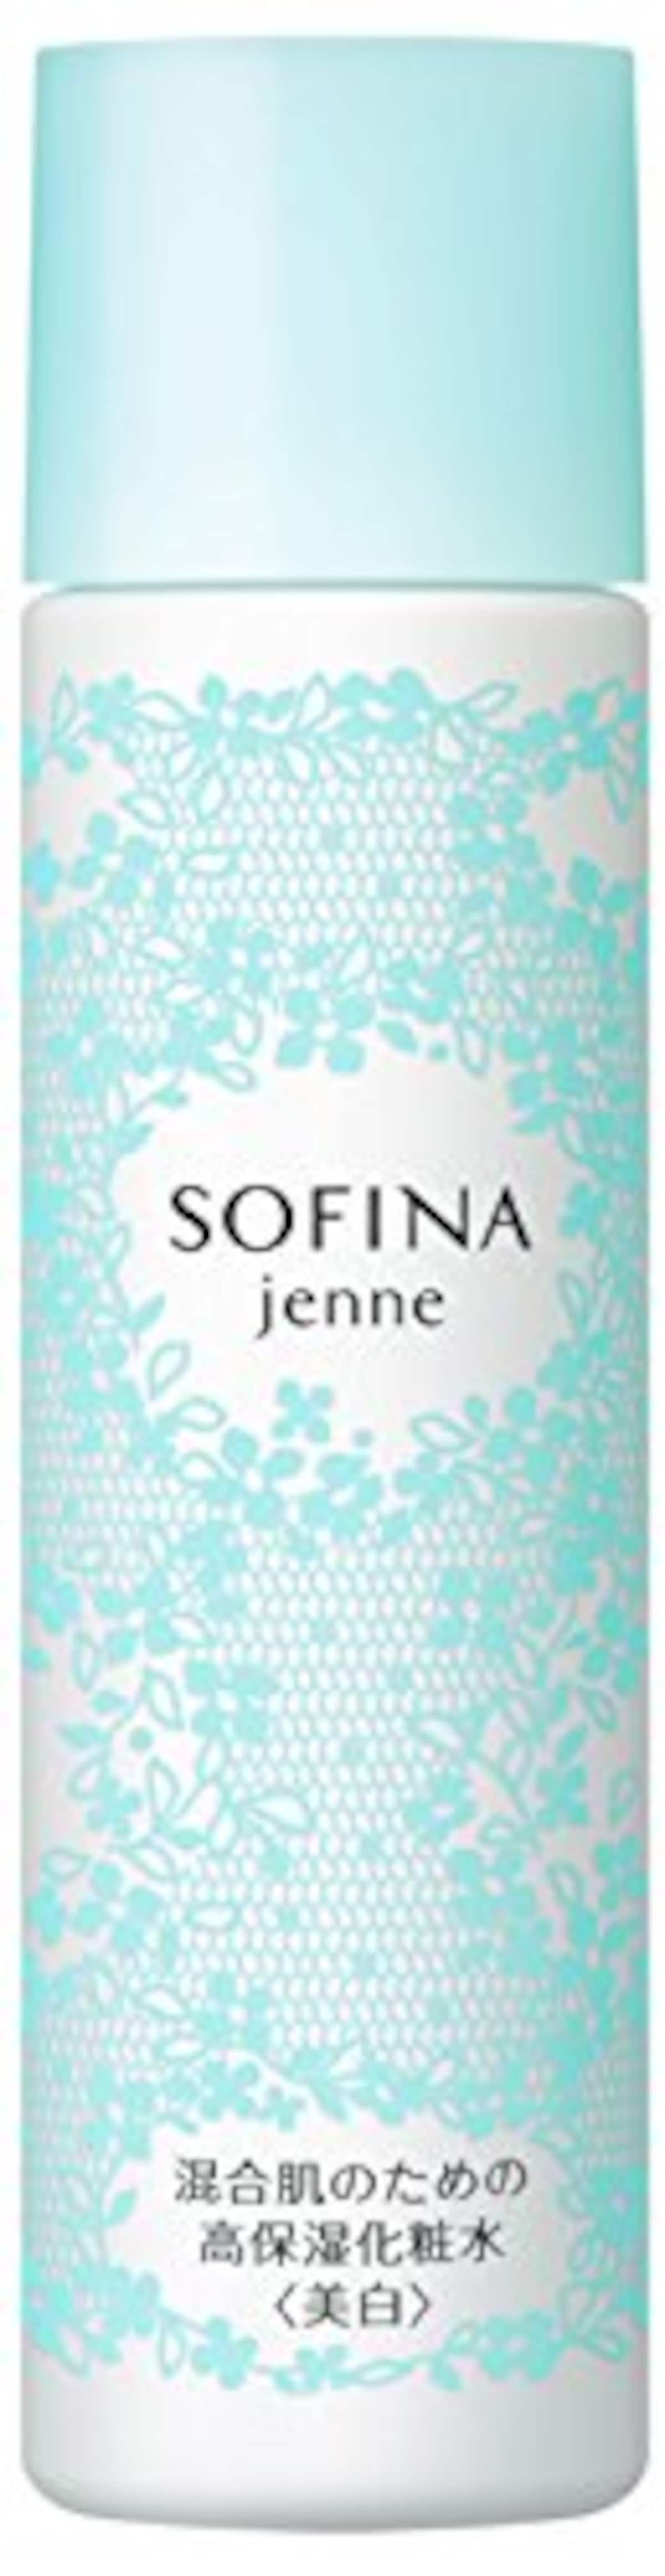 SOFINA jenne(ソフィーナジェンヌ) 混合肌のための高保湿化粧水